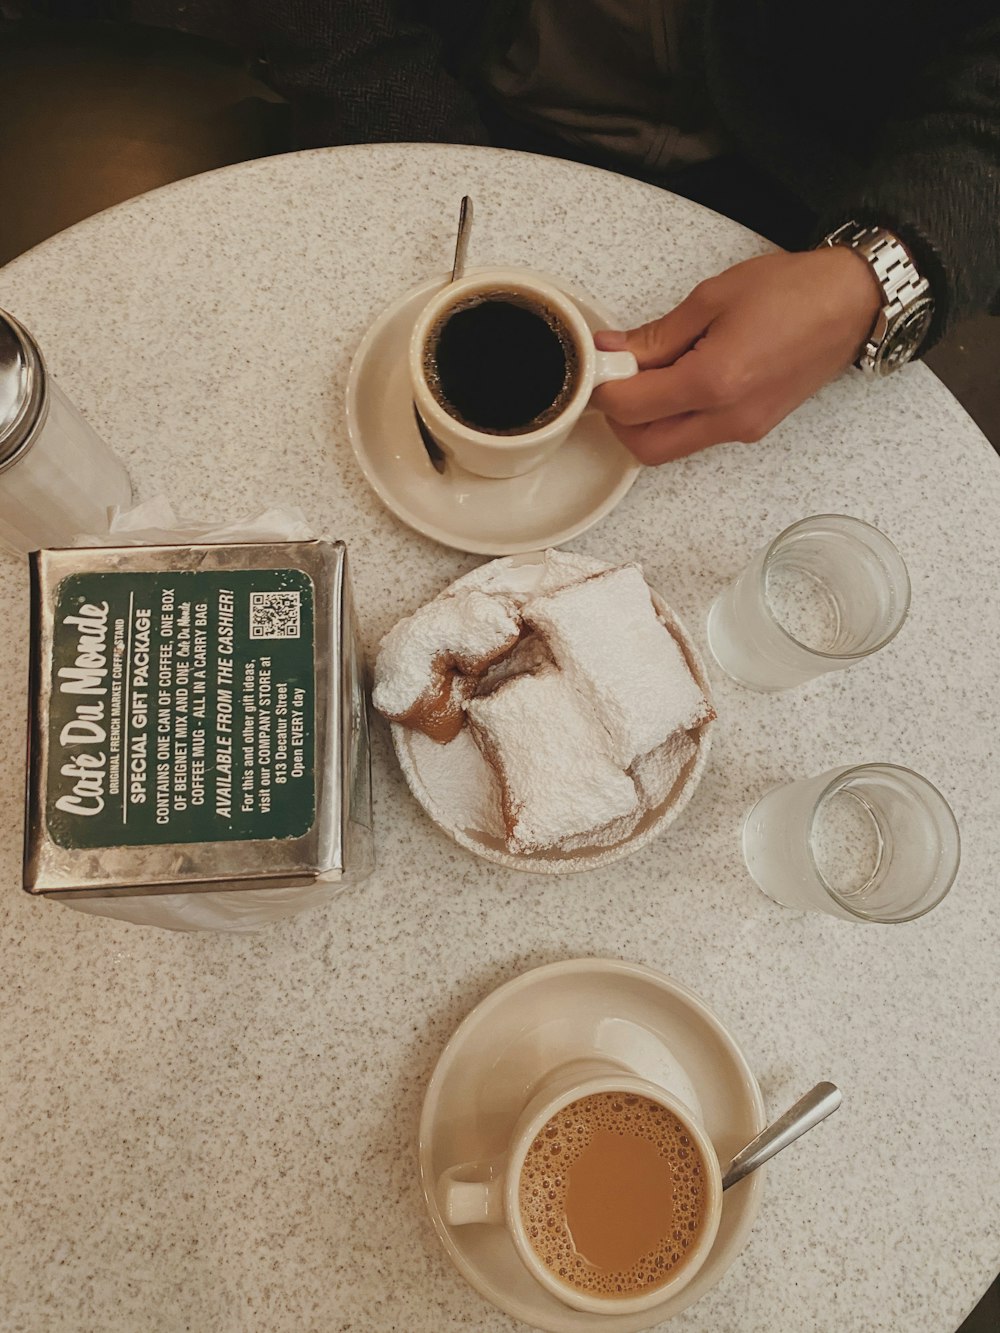 얇게 썬 케이크 근처의 흰색 세라믹 머그잔에 담긴 블랙 커피, 음료수 잔에 담긴 물, 테이블 위의 투명한 조미료 셰이커